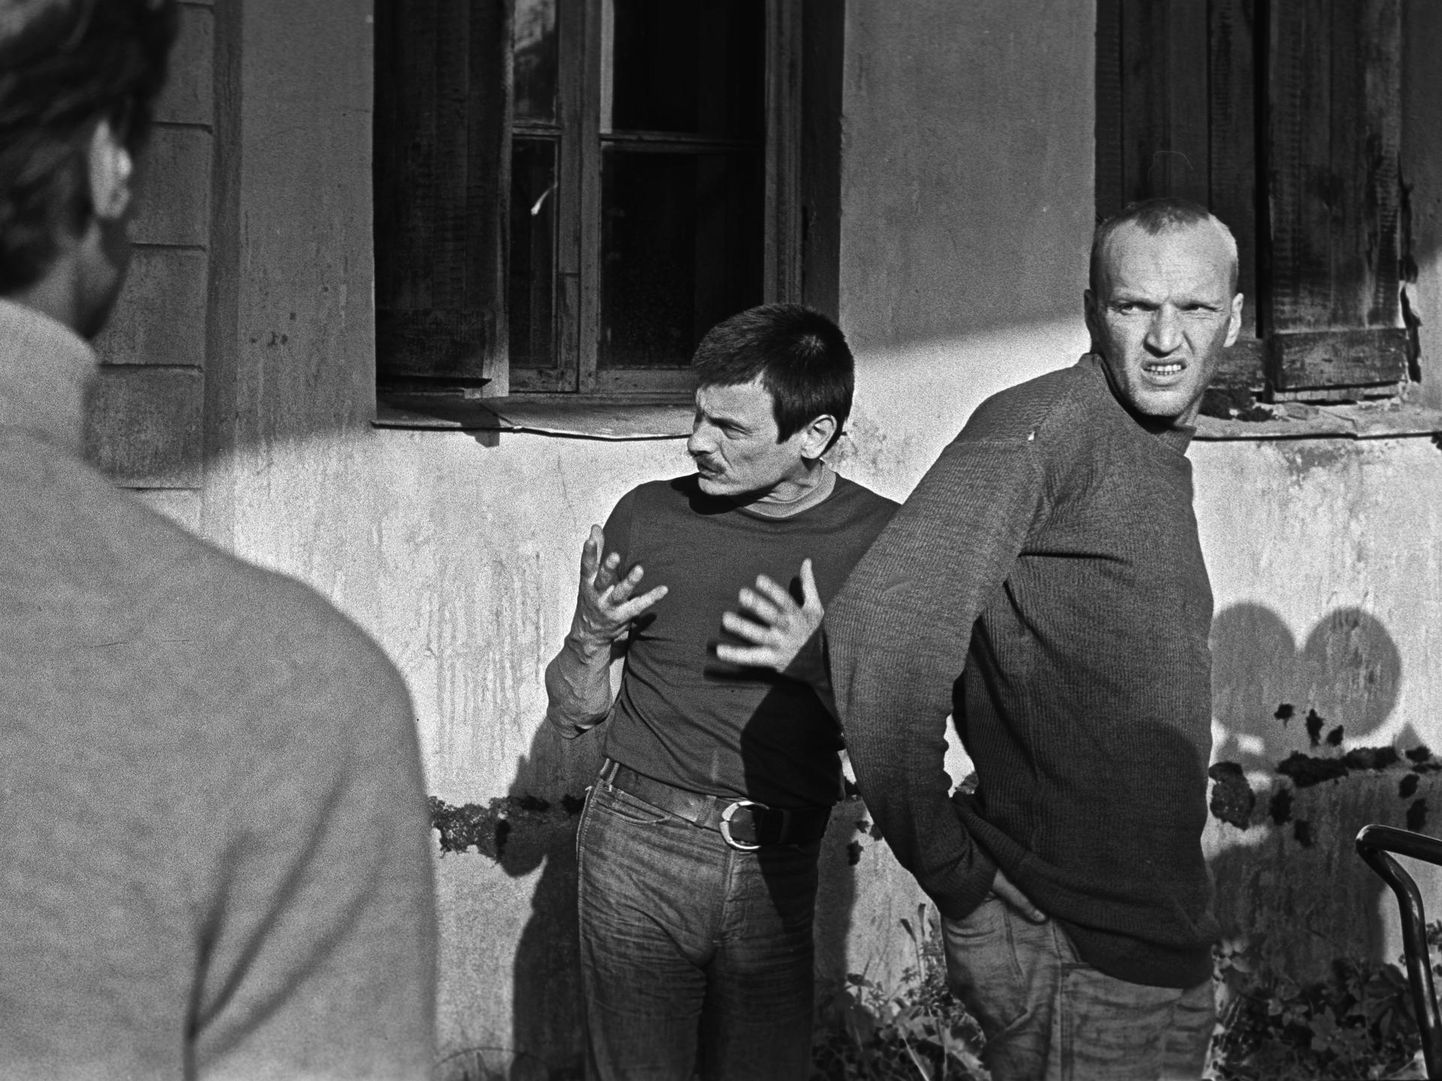 «Stalkeri» võtted, Eesti 1977. Andrei Tarkovski ja Aleksandr Kaidanovski Stalkerina.